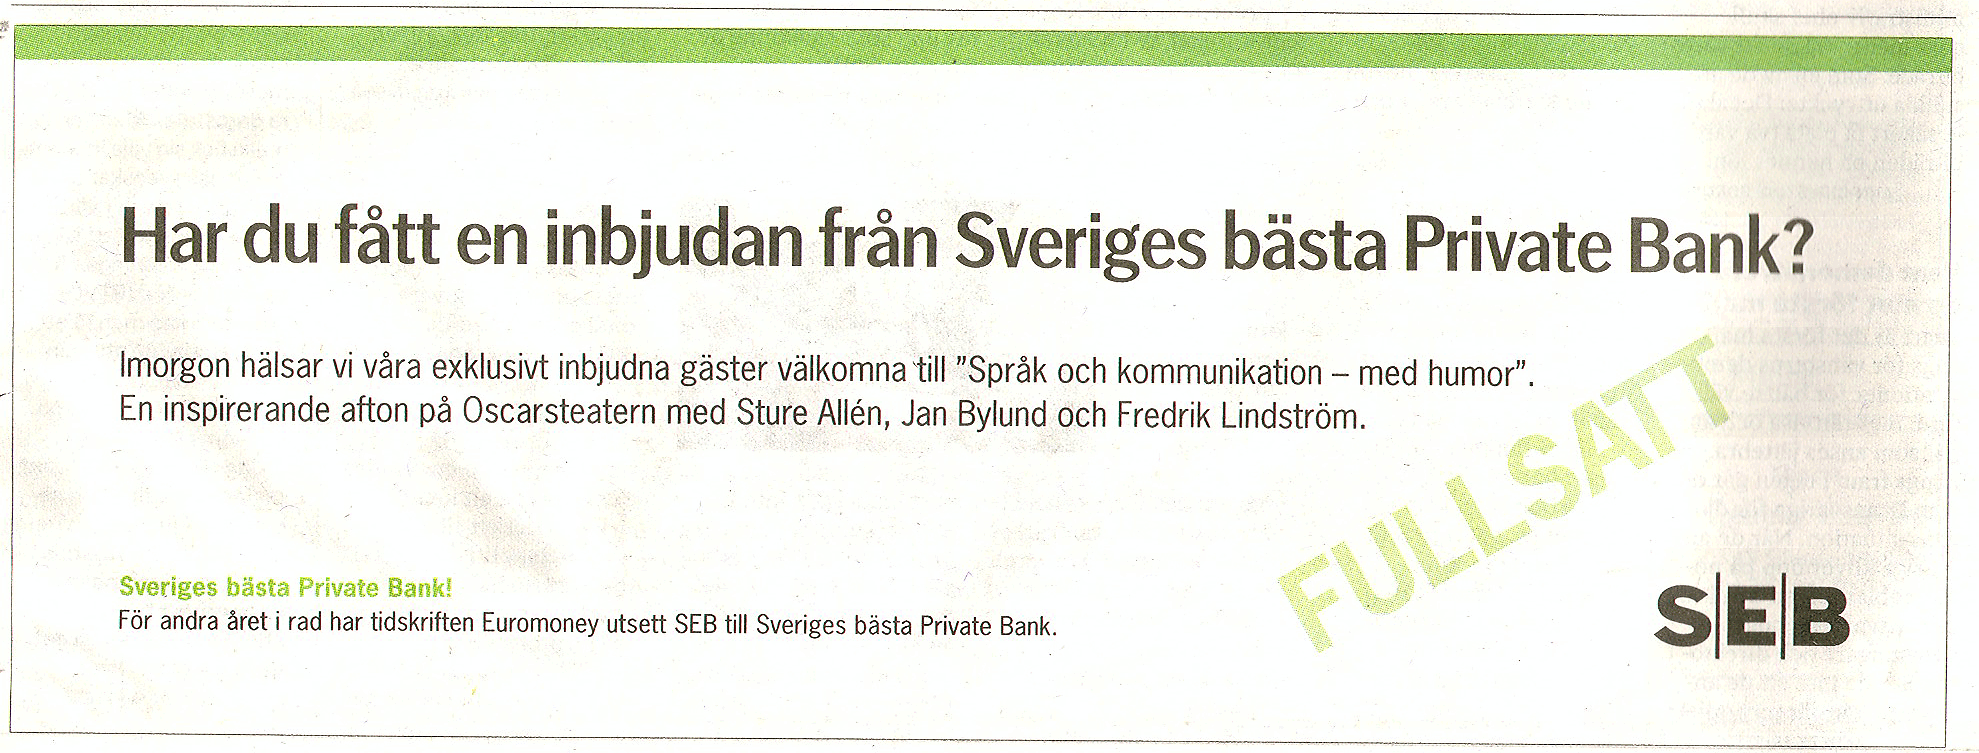 Annons för SEB - Sveriges bästa Private Bank